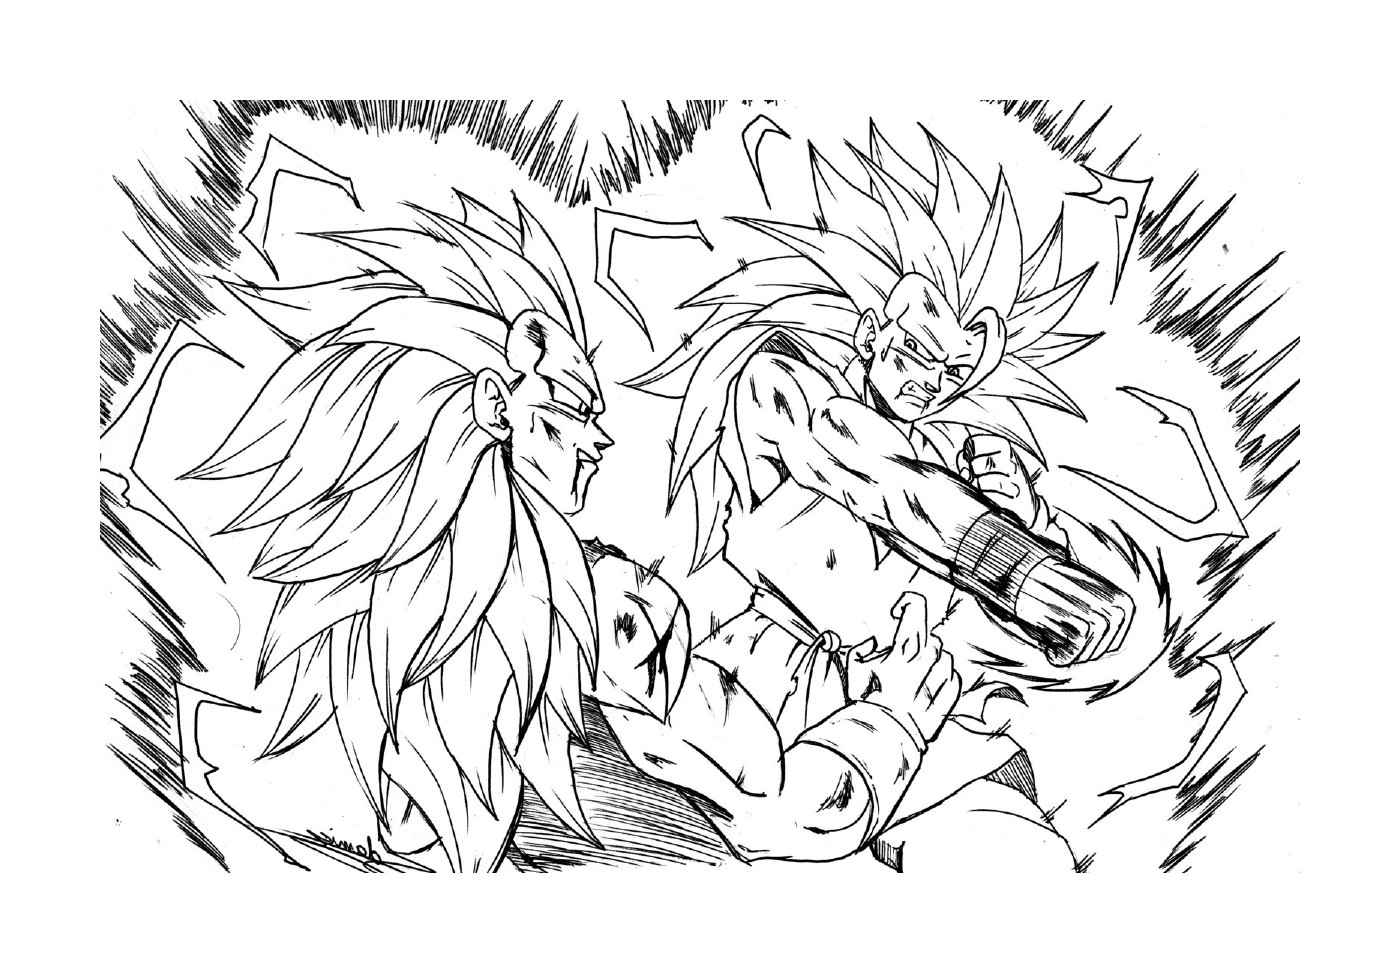  Goku e Broly, luta lendária 